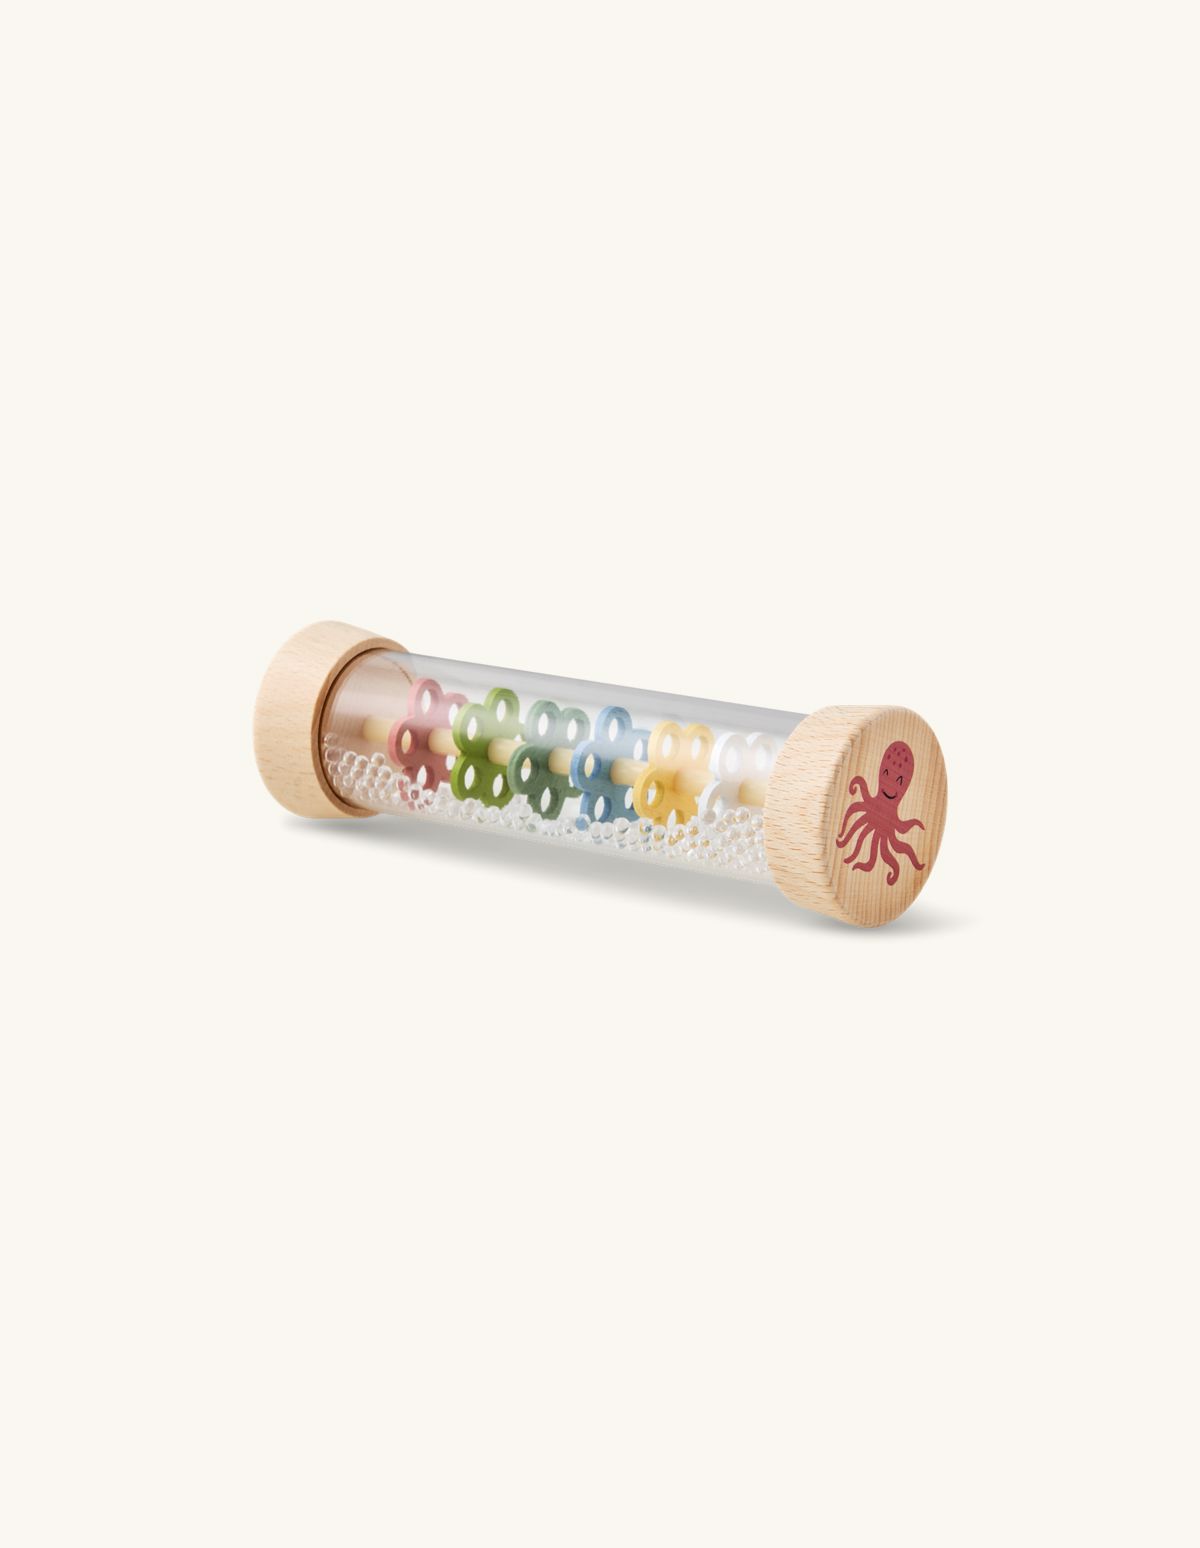 Bâton de pluie en jouet | Bois de hêtre/contreplaqué/polycarbonate. 19 x 5,5 cm. | Søstrene Grene